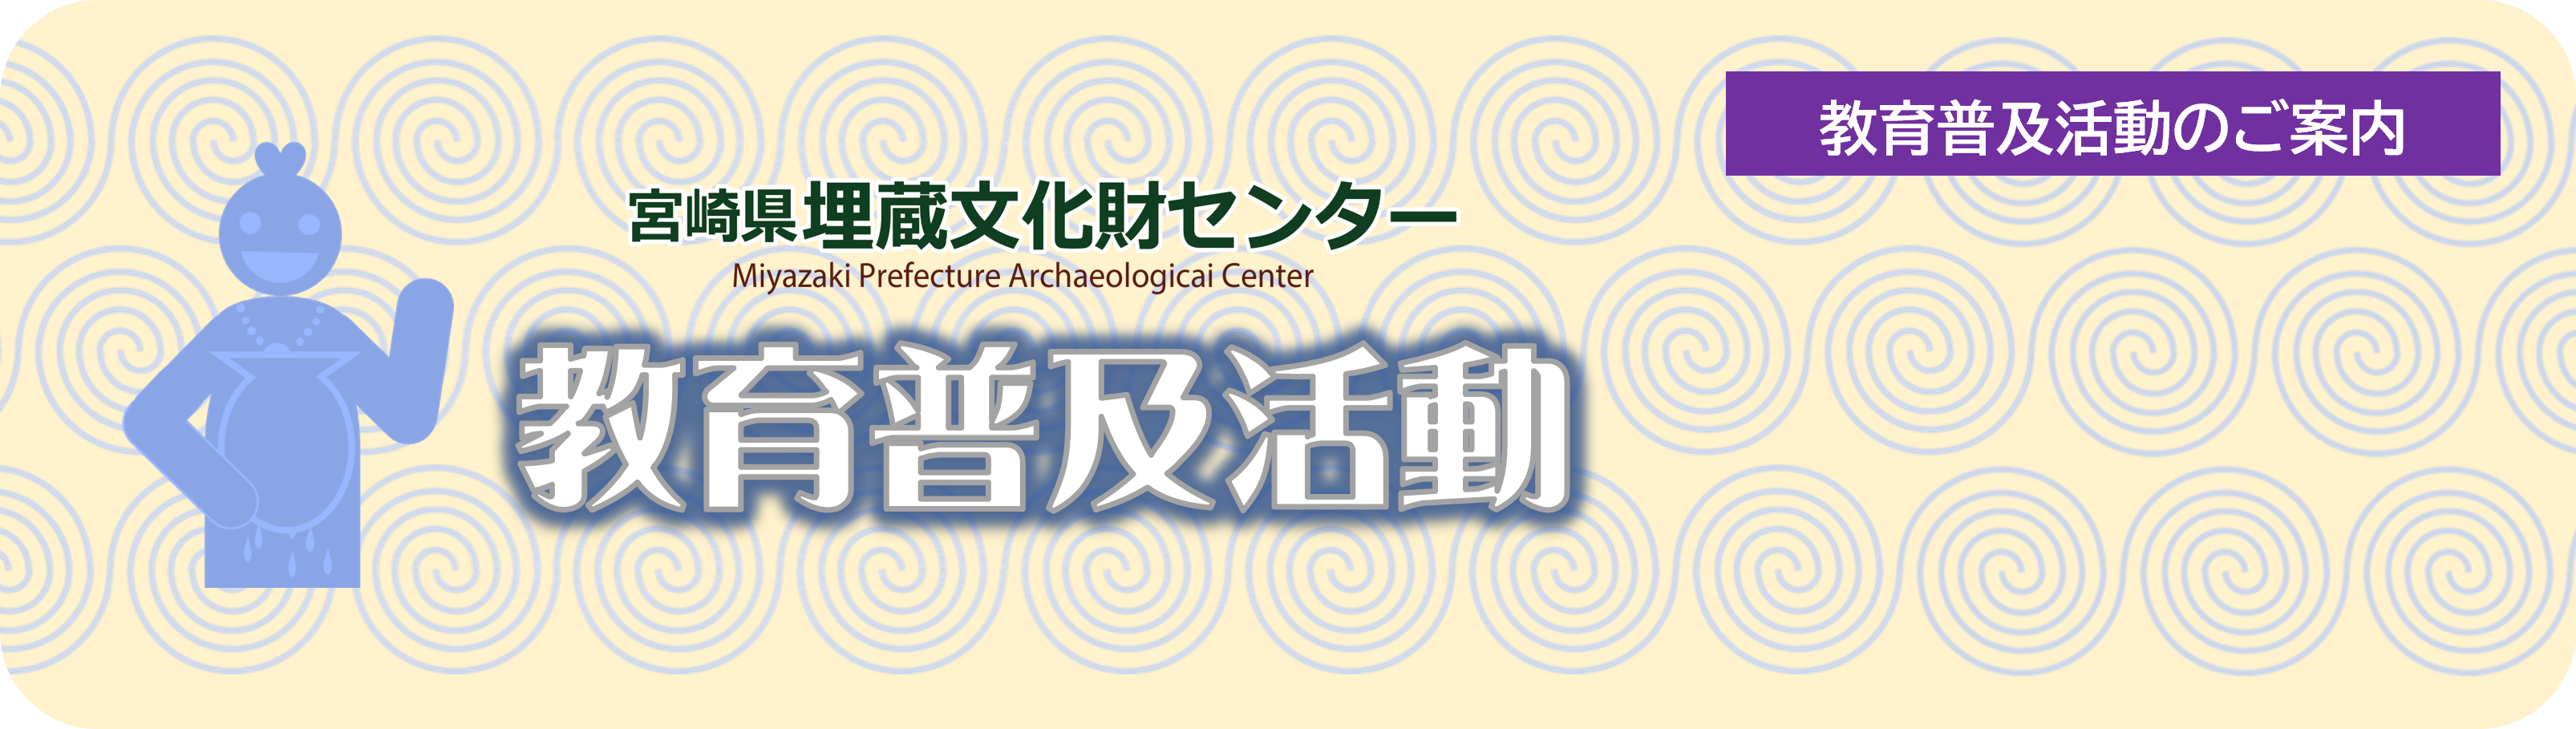 ホンモノの感動を。宮崎県埋蔵文化財センターの教育普及活動